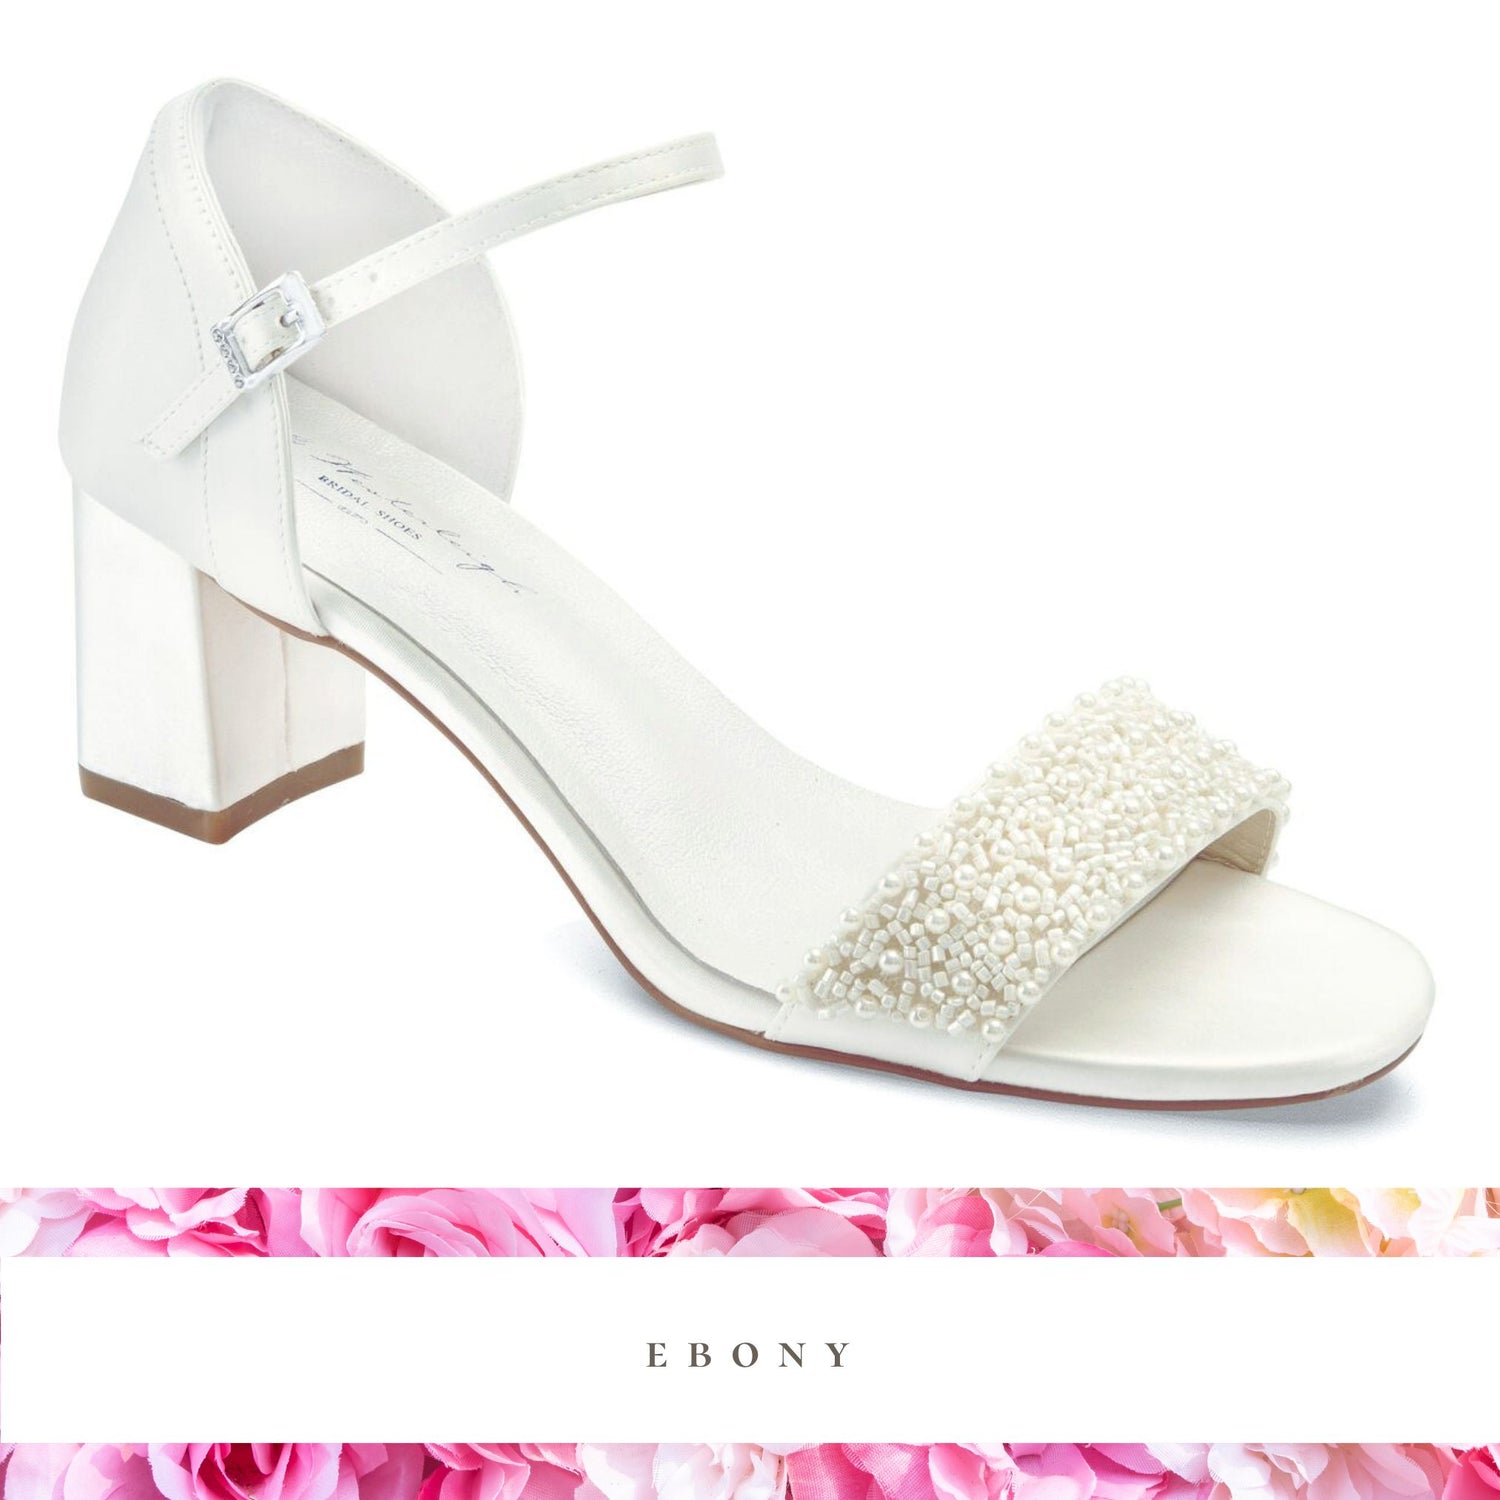 ebony wedding shoes